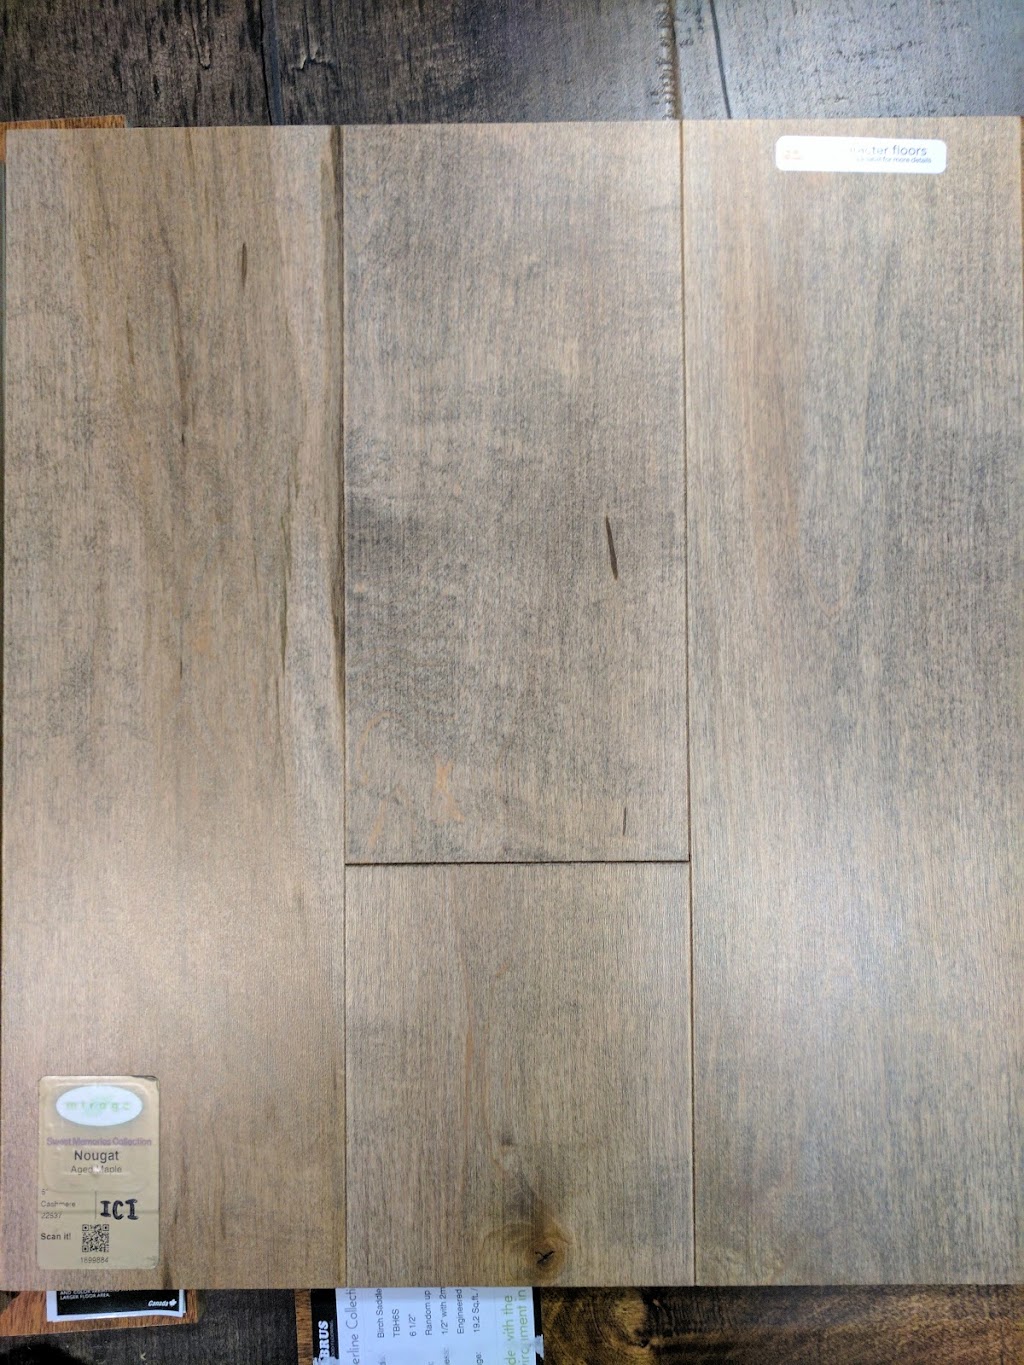 Gew Hardwood Floor Inc 44711 S Grimmer, Gew Hardwood Flooring